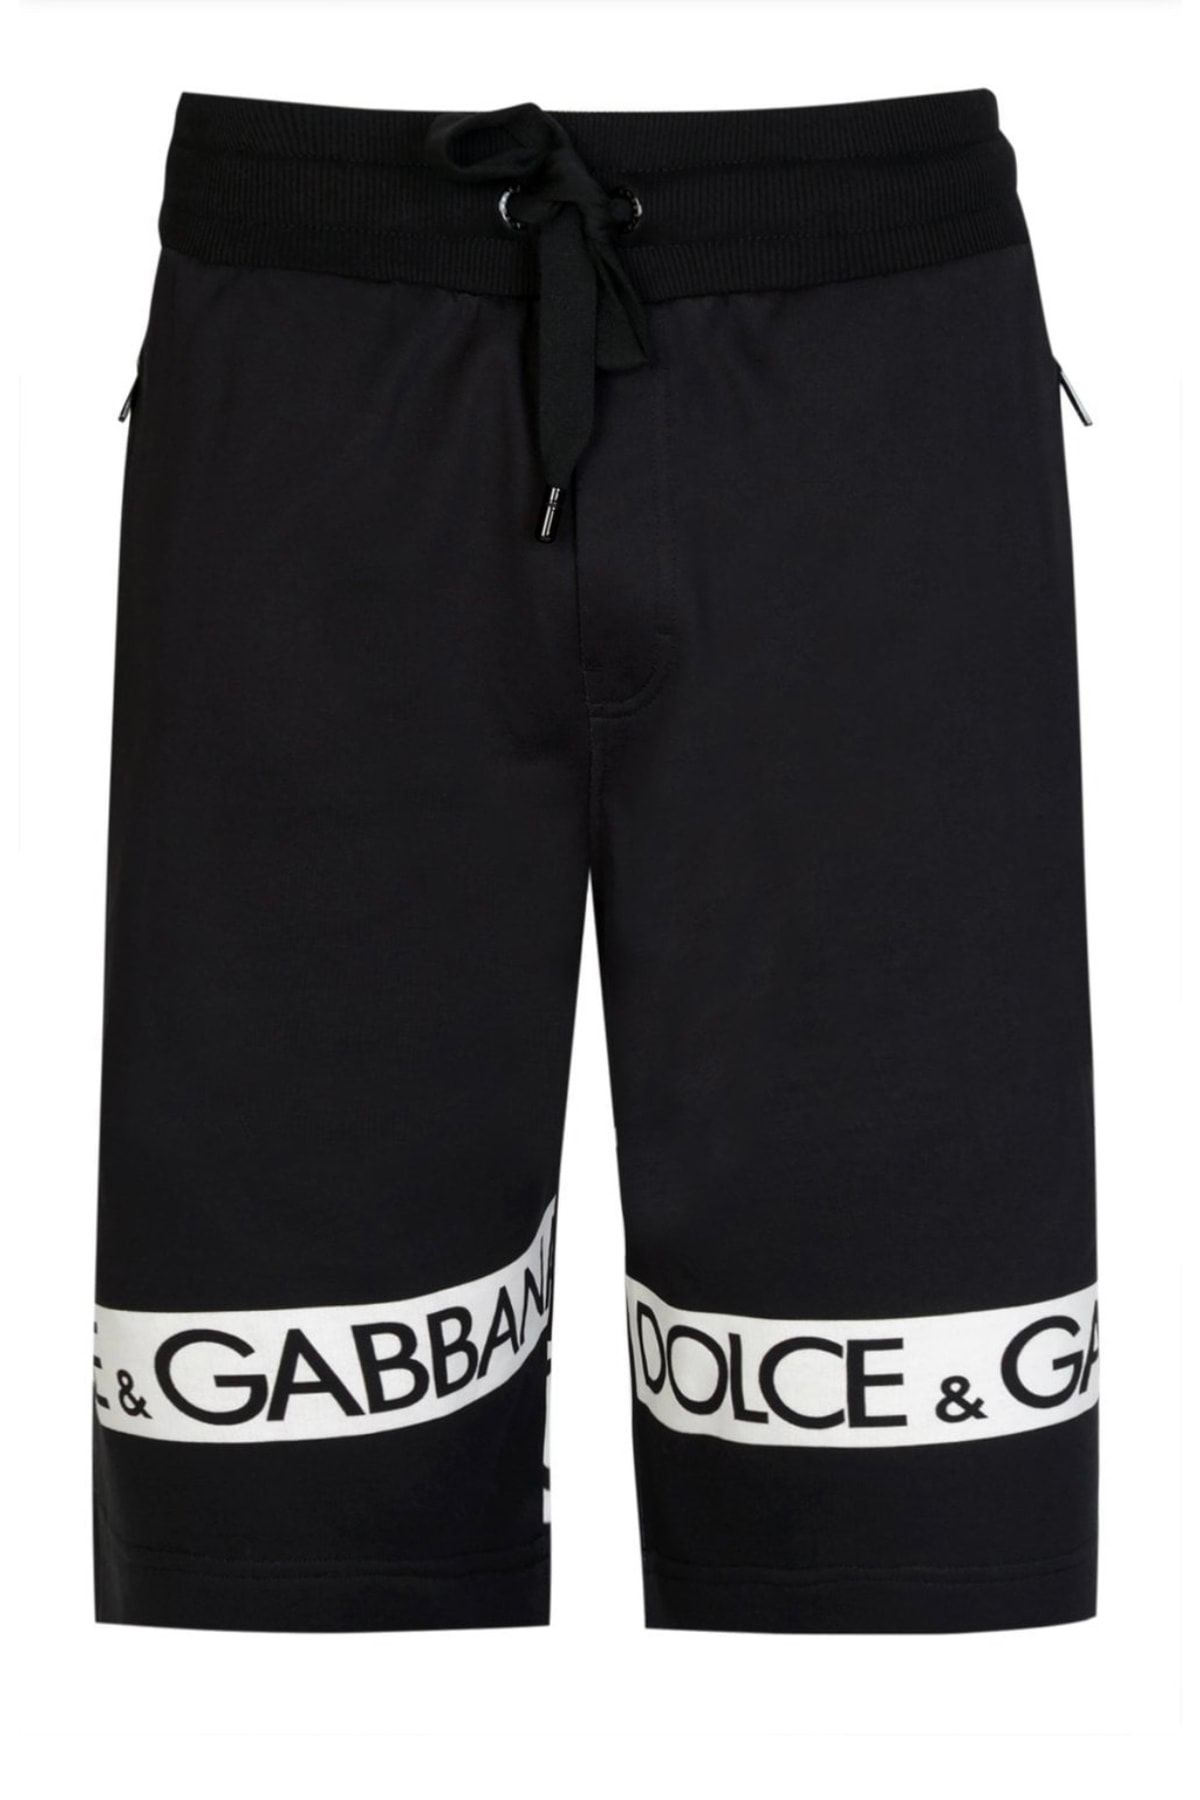 Dolce&Gabbana Reggello Outlet Bermuda Short